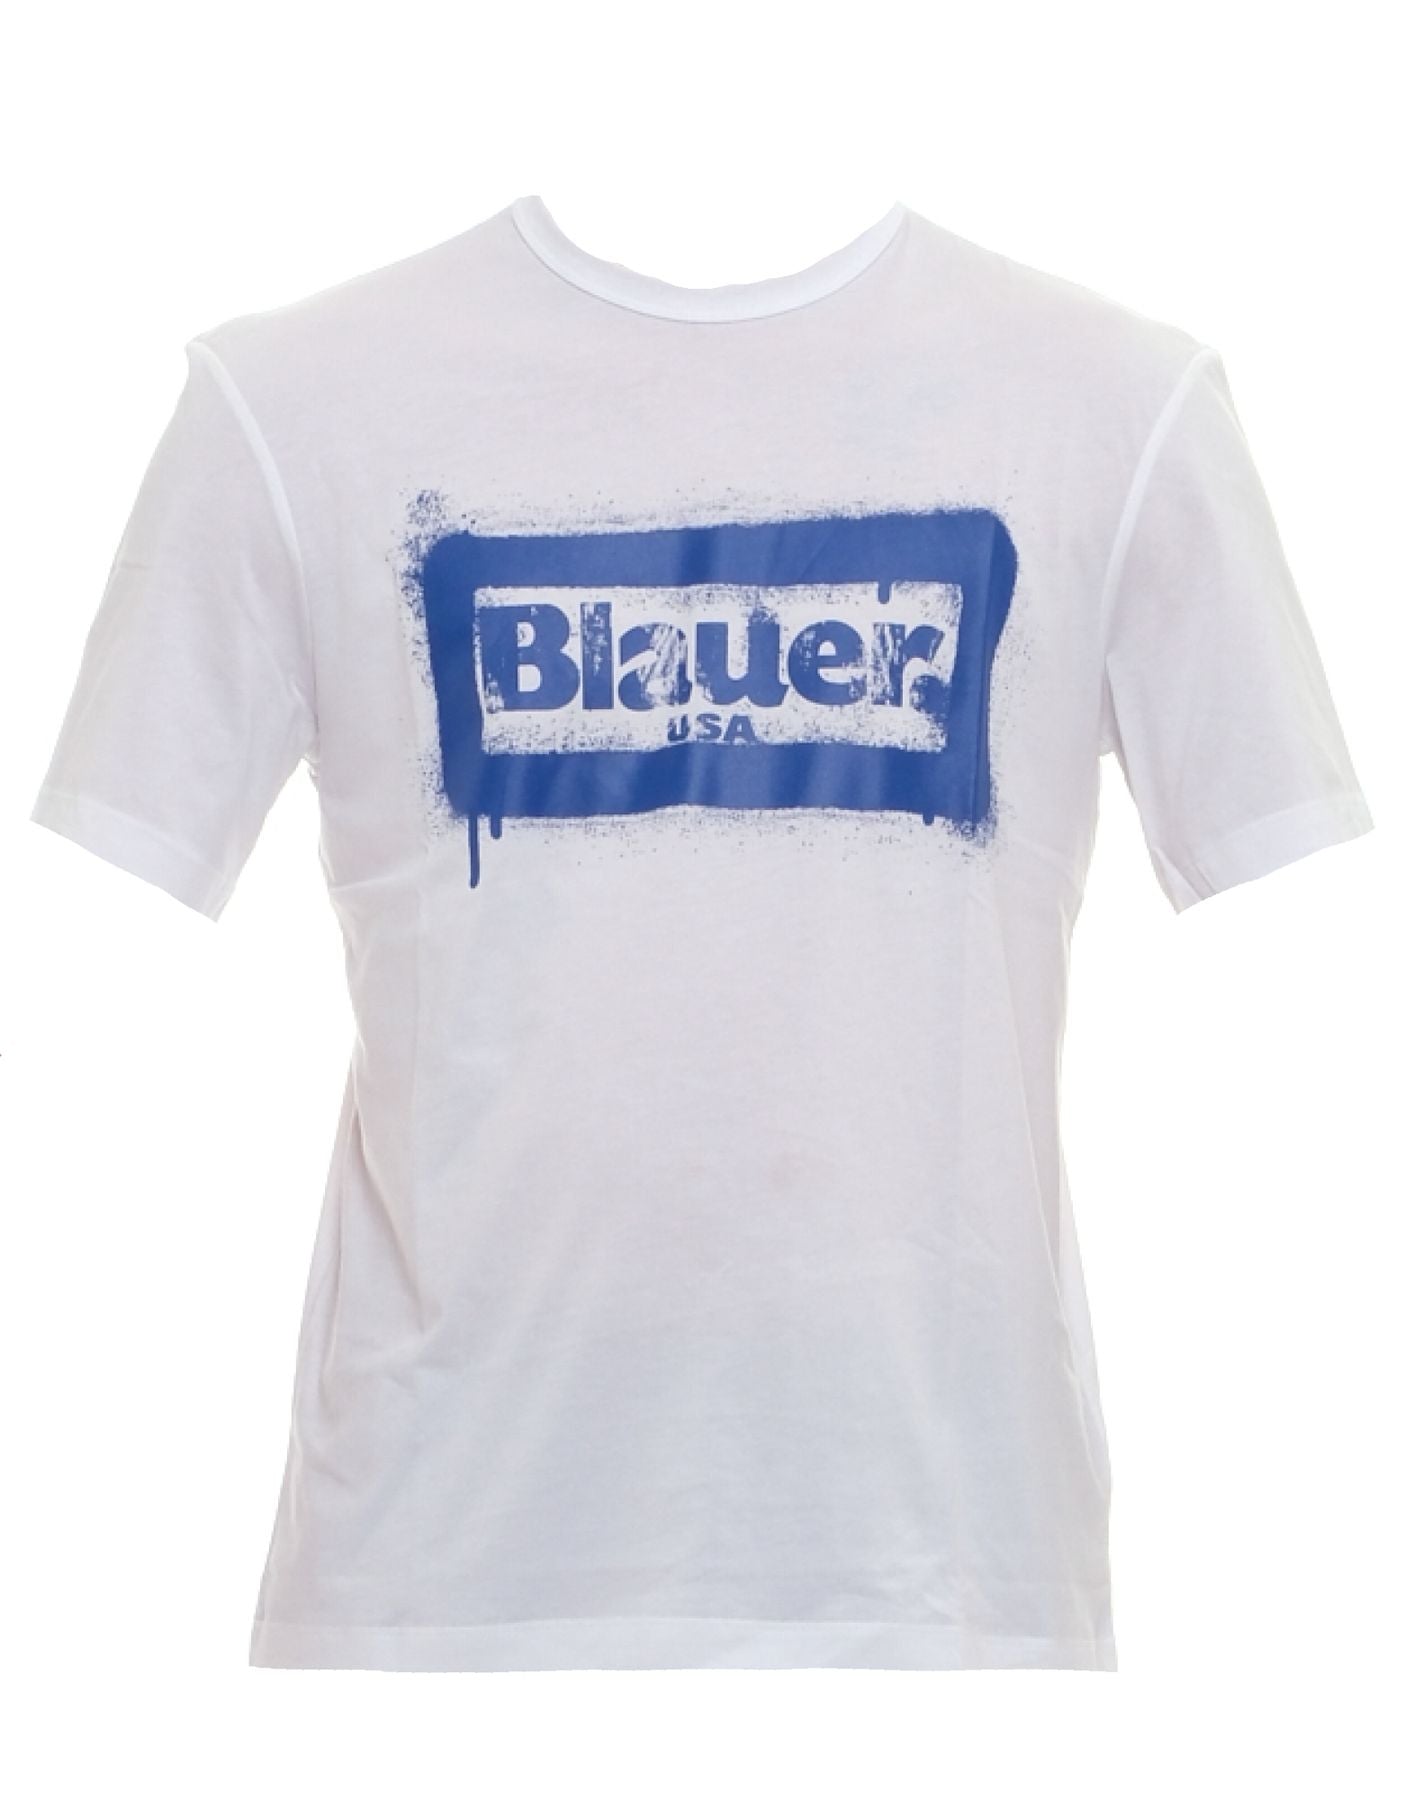 T-shirt pour l'homme 24SBLUH02147 004547 100 Blauer